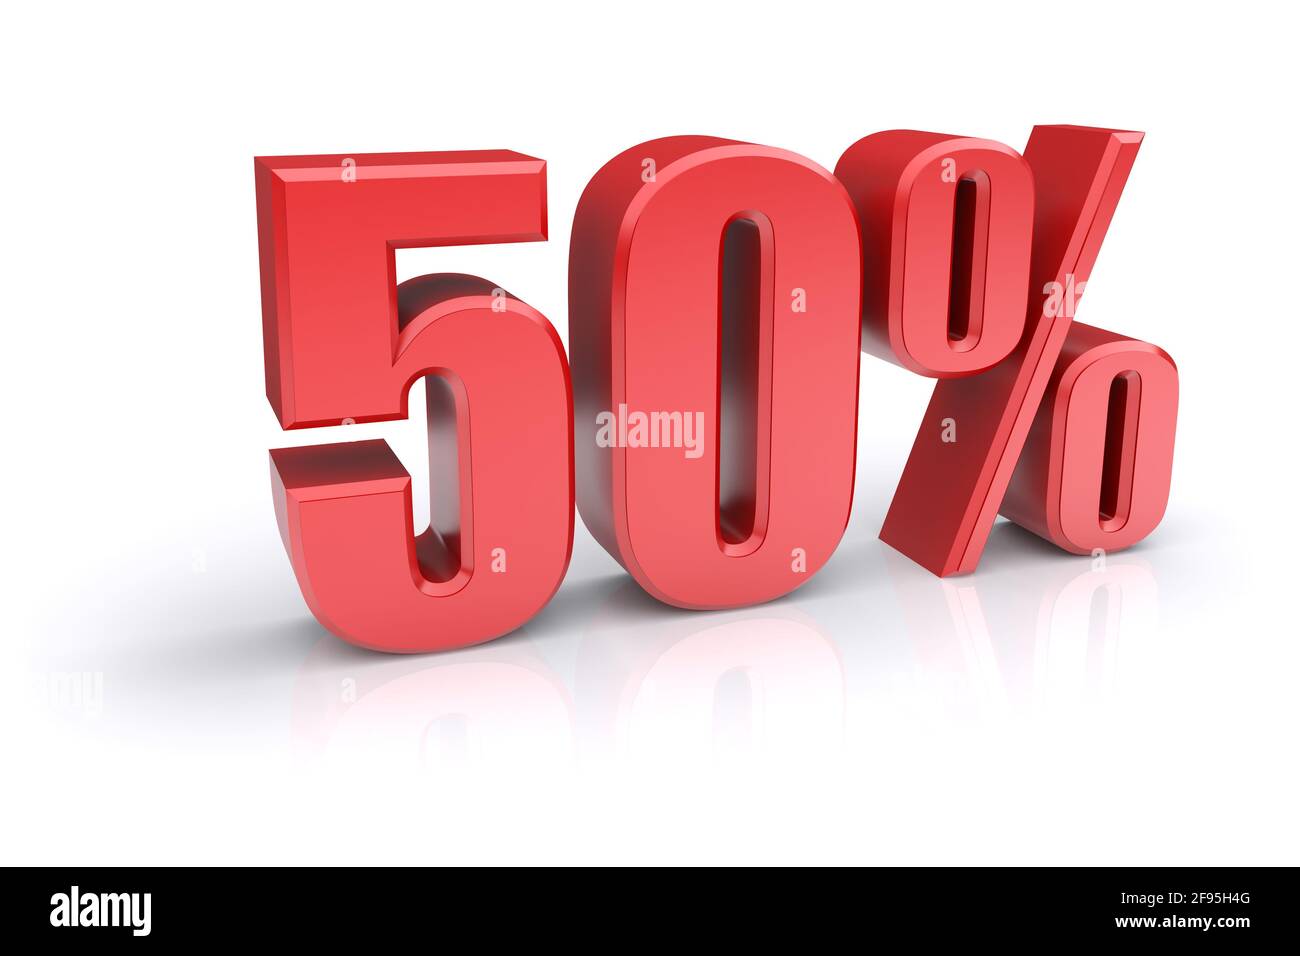 Icona rossa del tasso percentuale del 50% su sfondo bianco. immagine 3d rappresentata Foto Stock